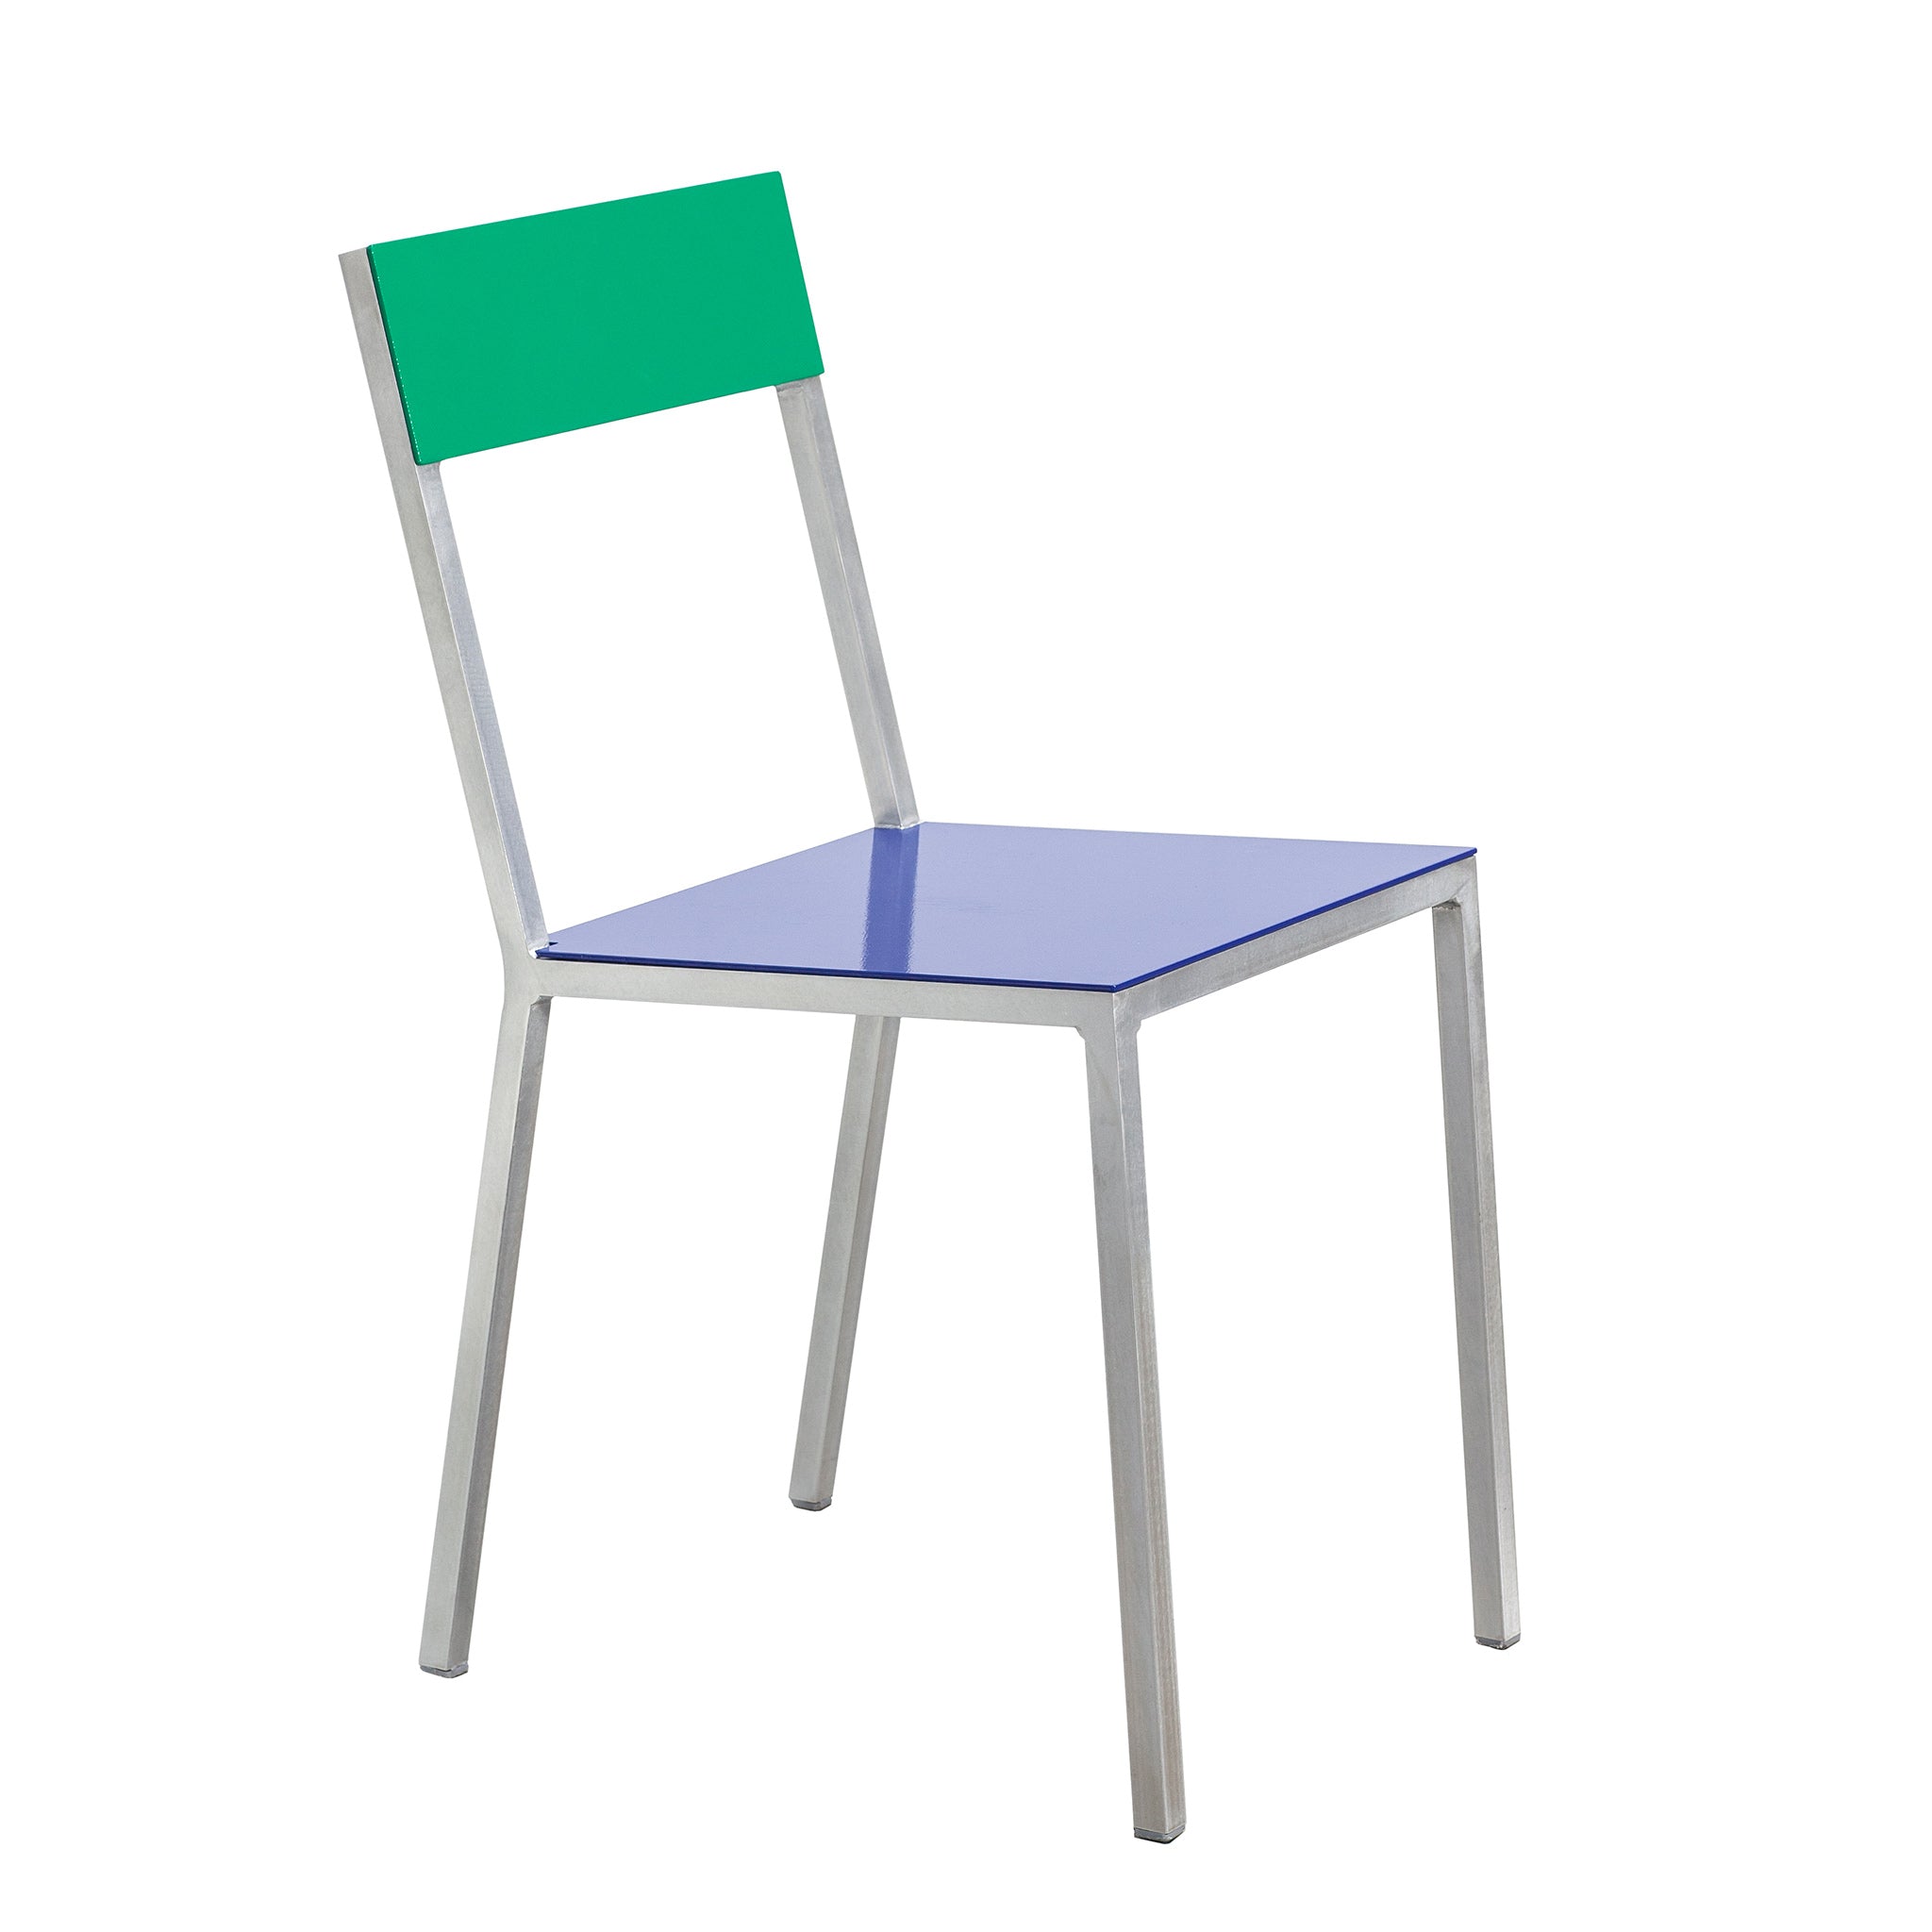 Valerie Objects Gartenstuhl | Alu Chair